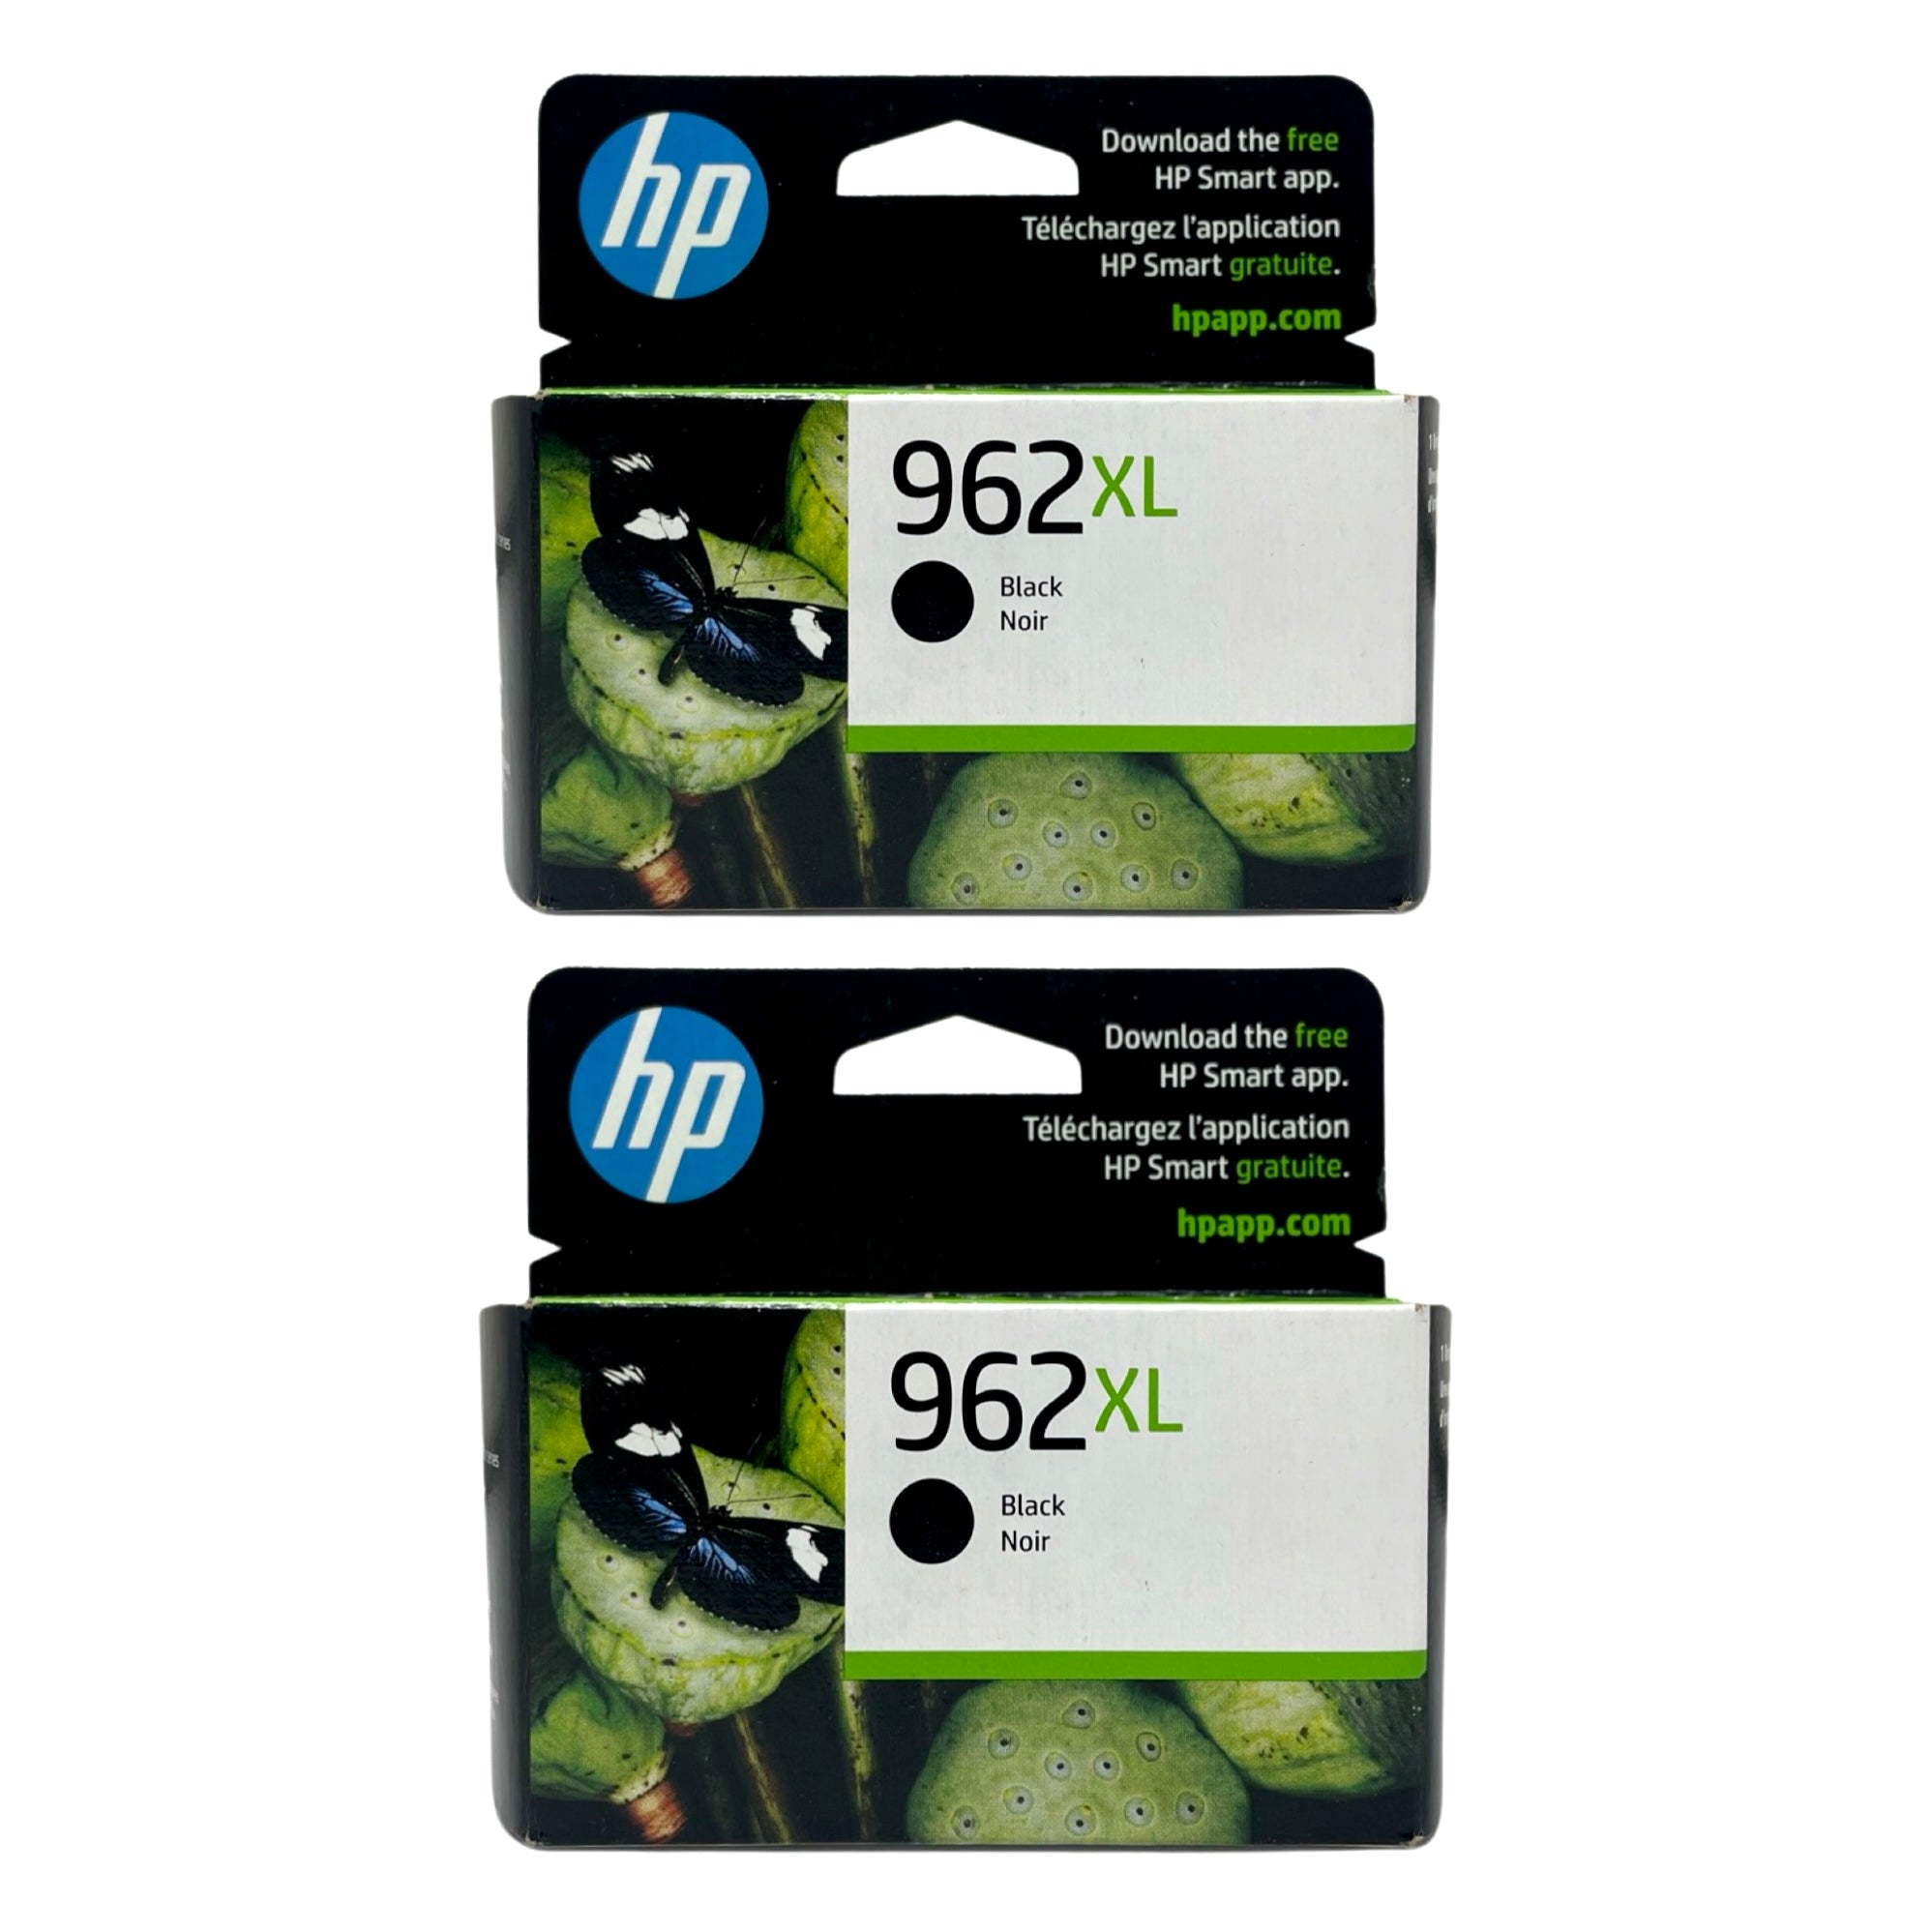 HP 962XL High Yield Ink 2 pack – Black - Original HP Ink Cartridges